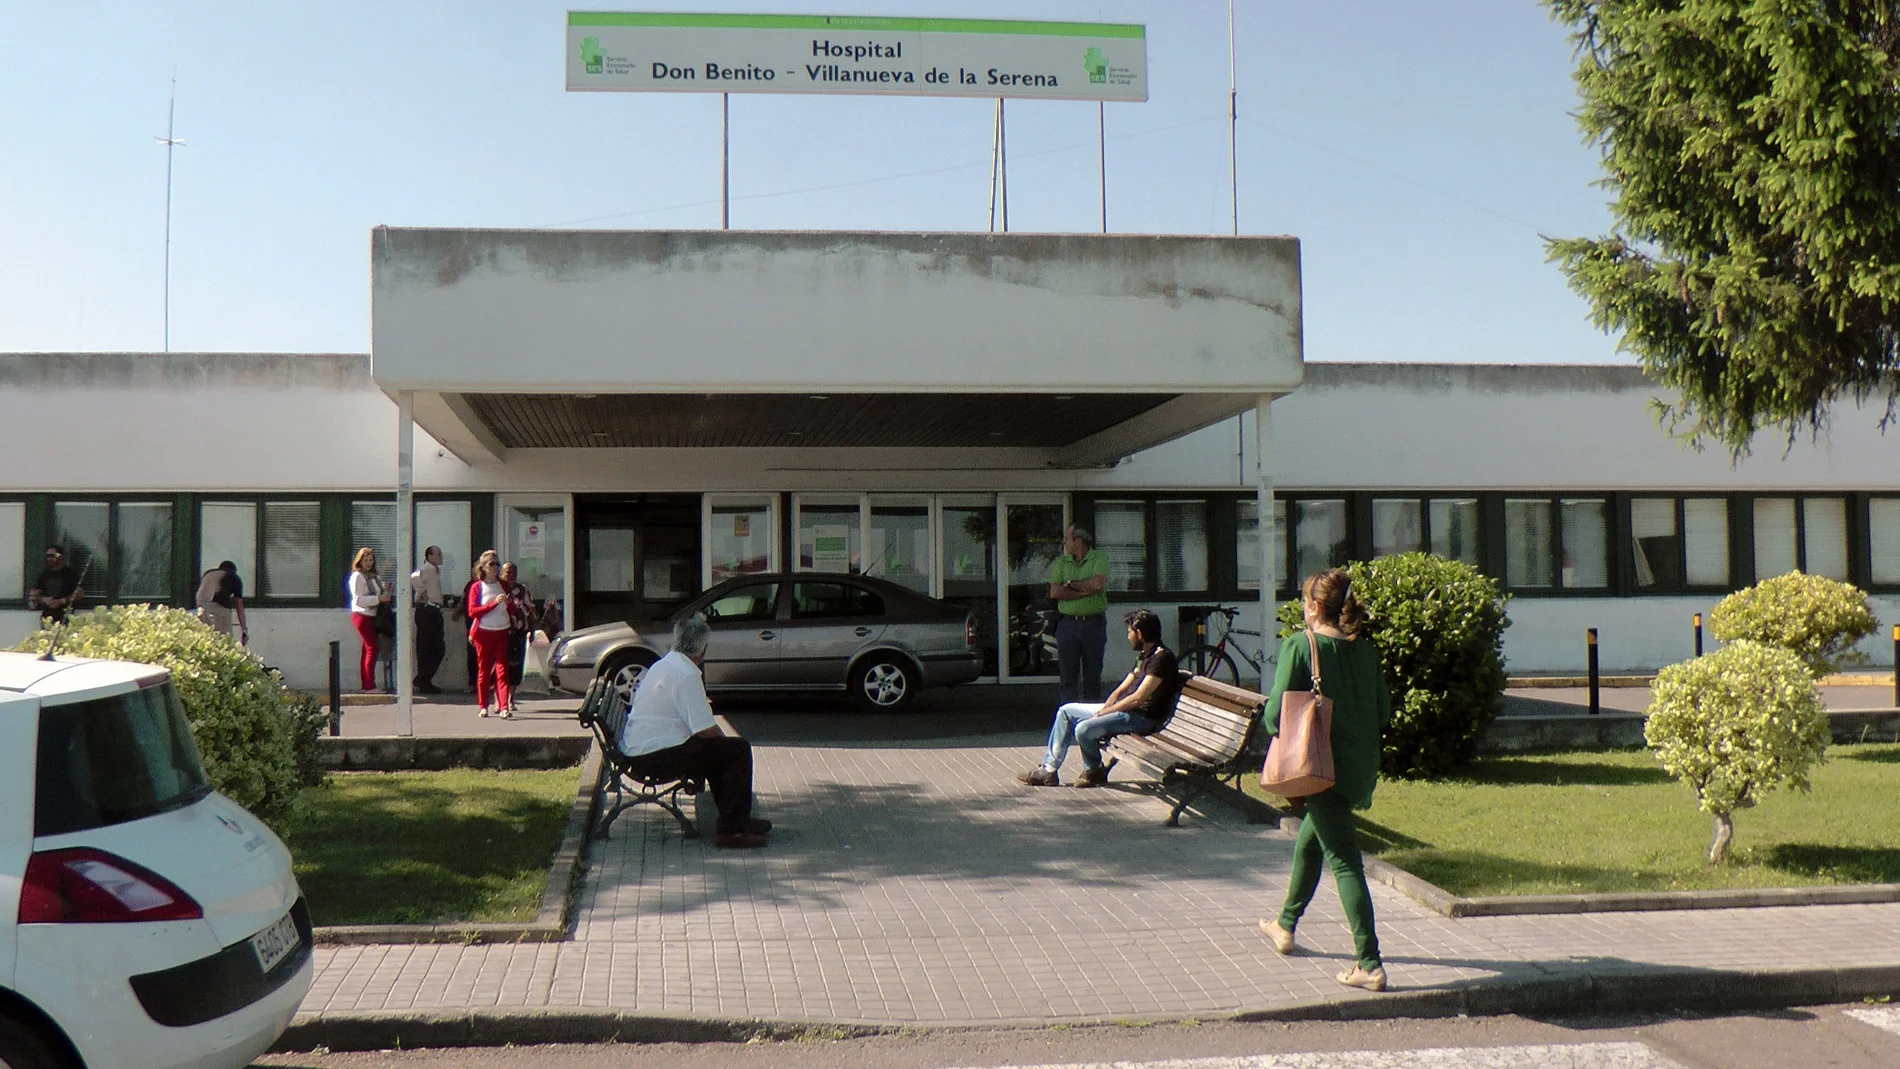 Hospital de Don Benito-Villanueva de la Serena